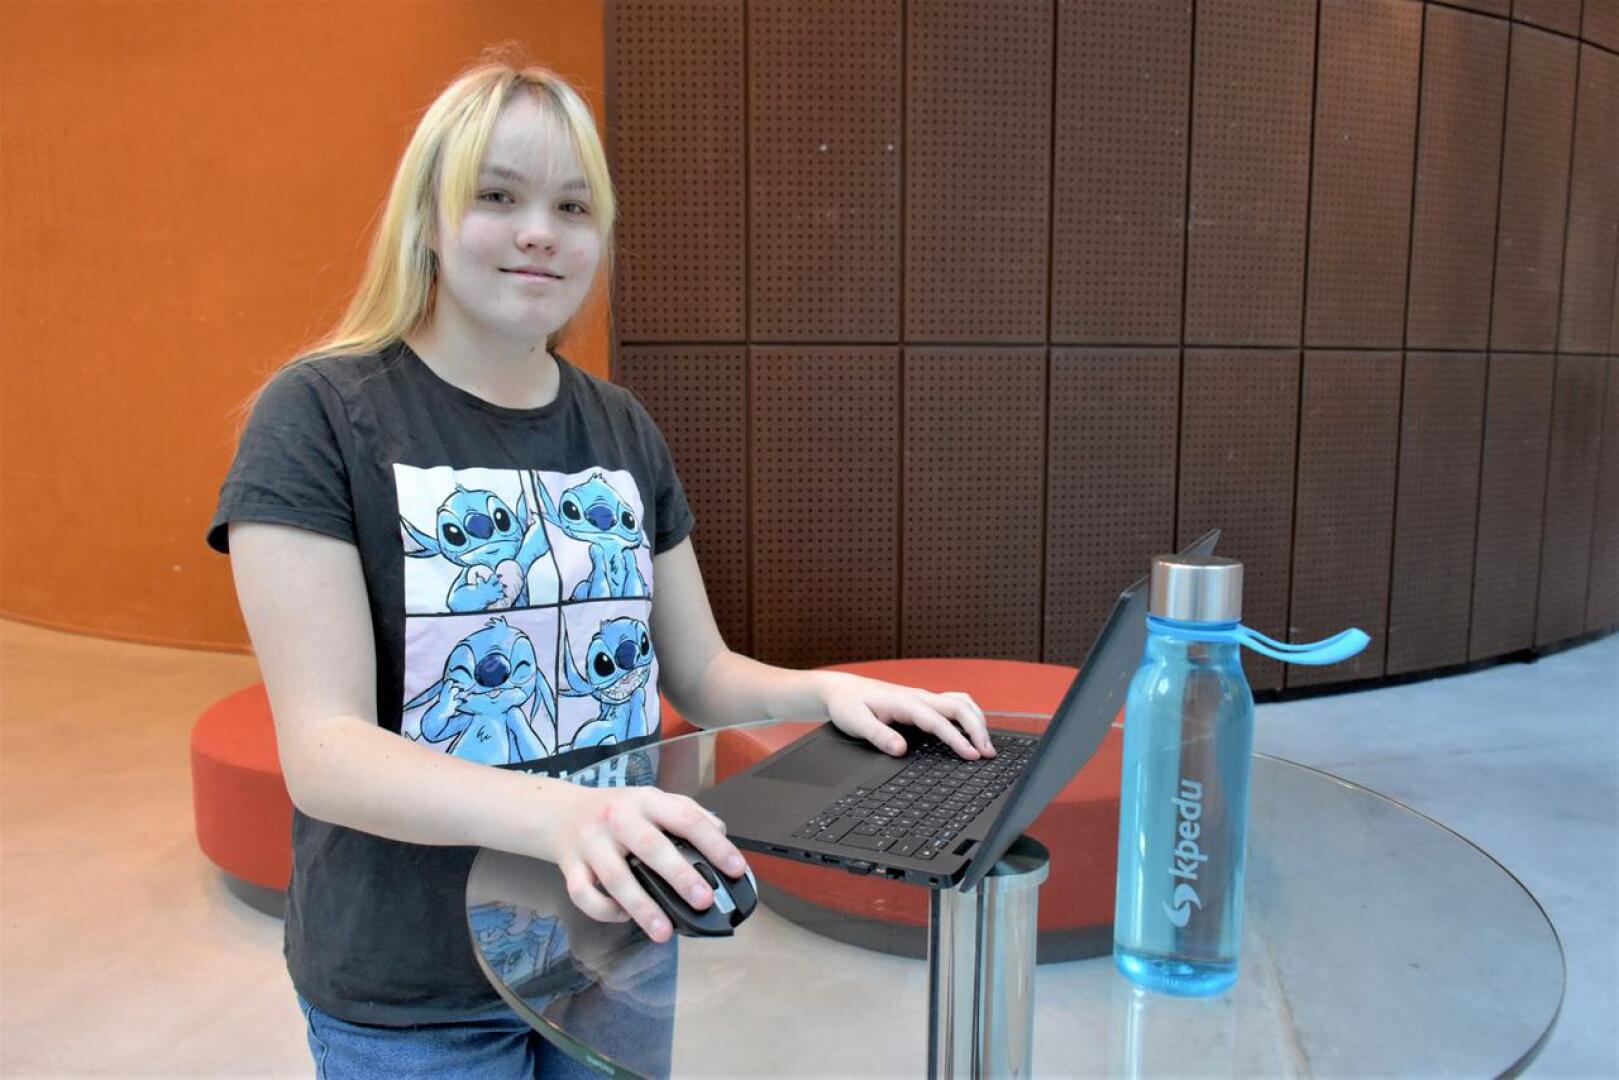 Pietarsaarelainen Sara Sandberg opiskelee ensimmäistä vuotta tietojenkäsittelyä ja viestintää Kpedussa.